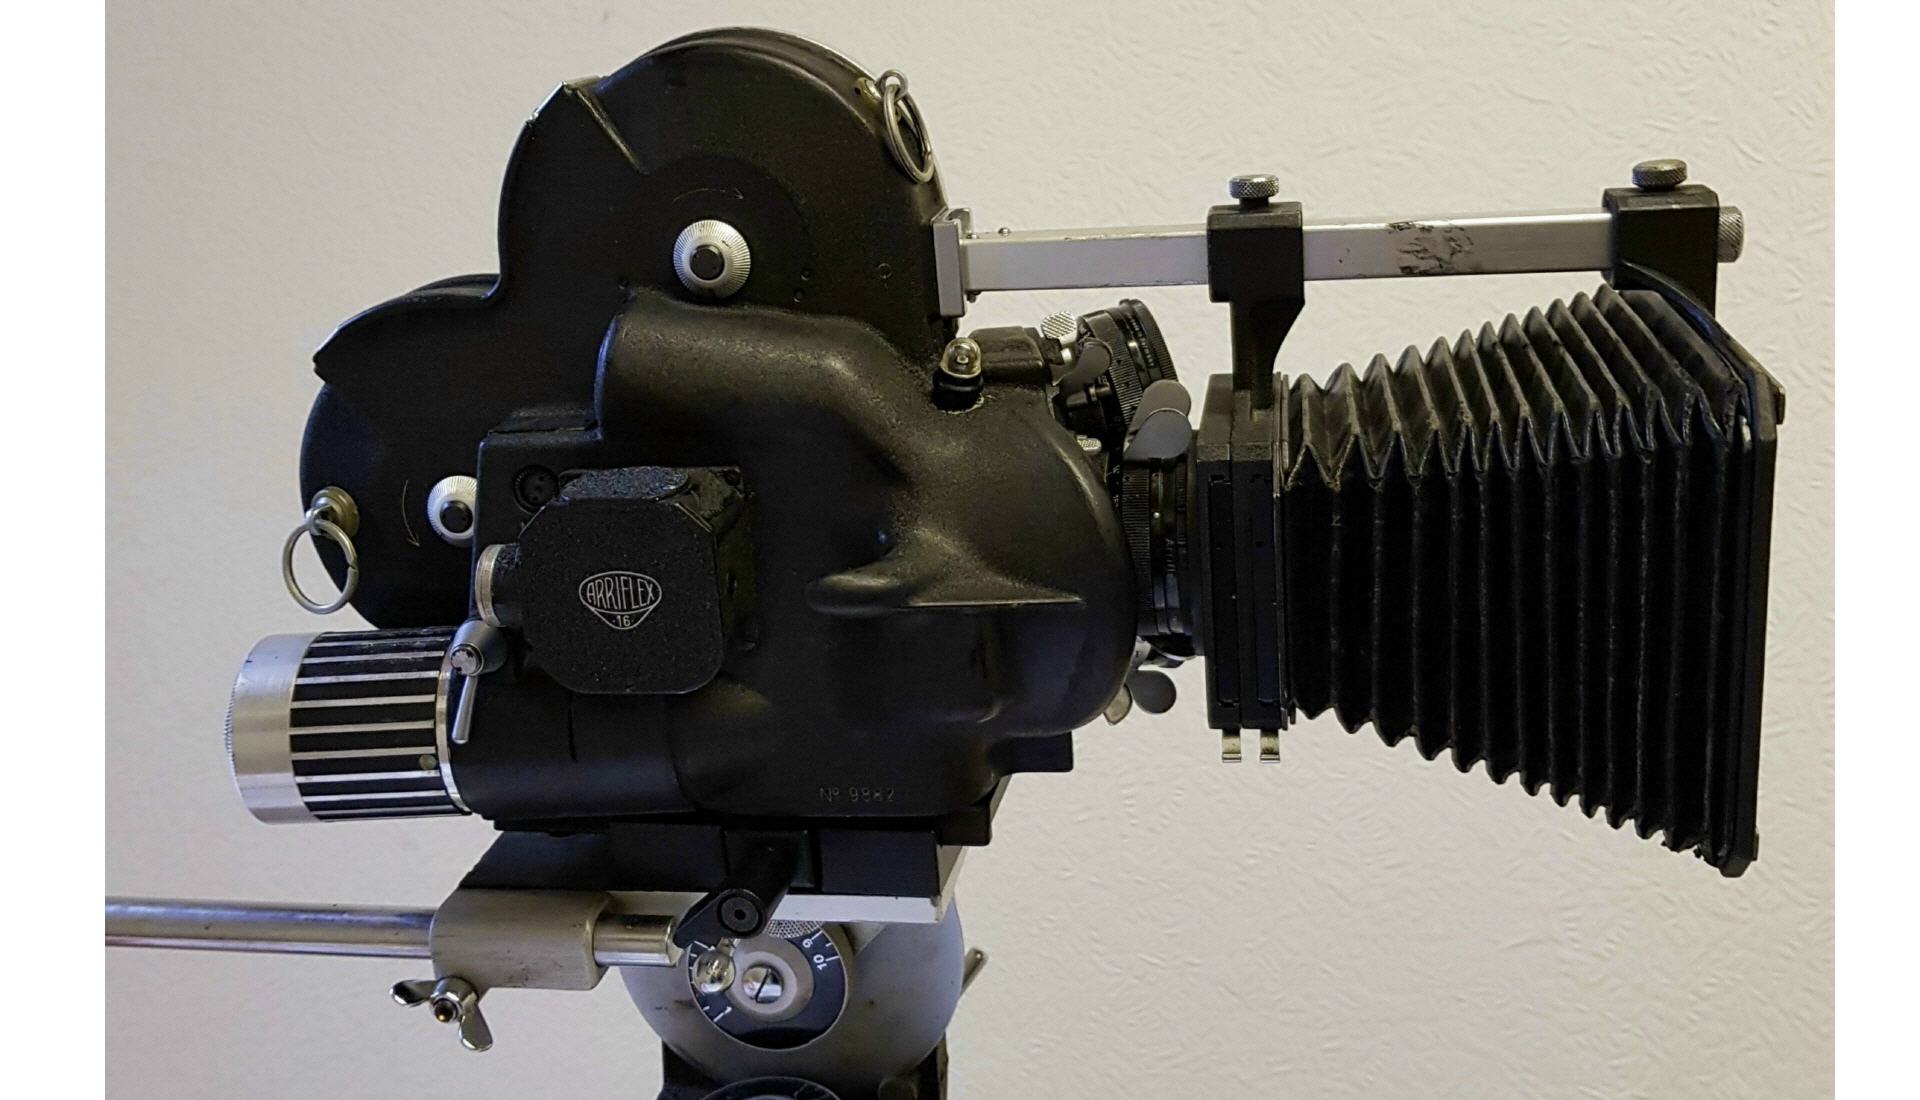 16 mm-Filmkamera für Fernsehreportagen und Unterrichtsfilme